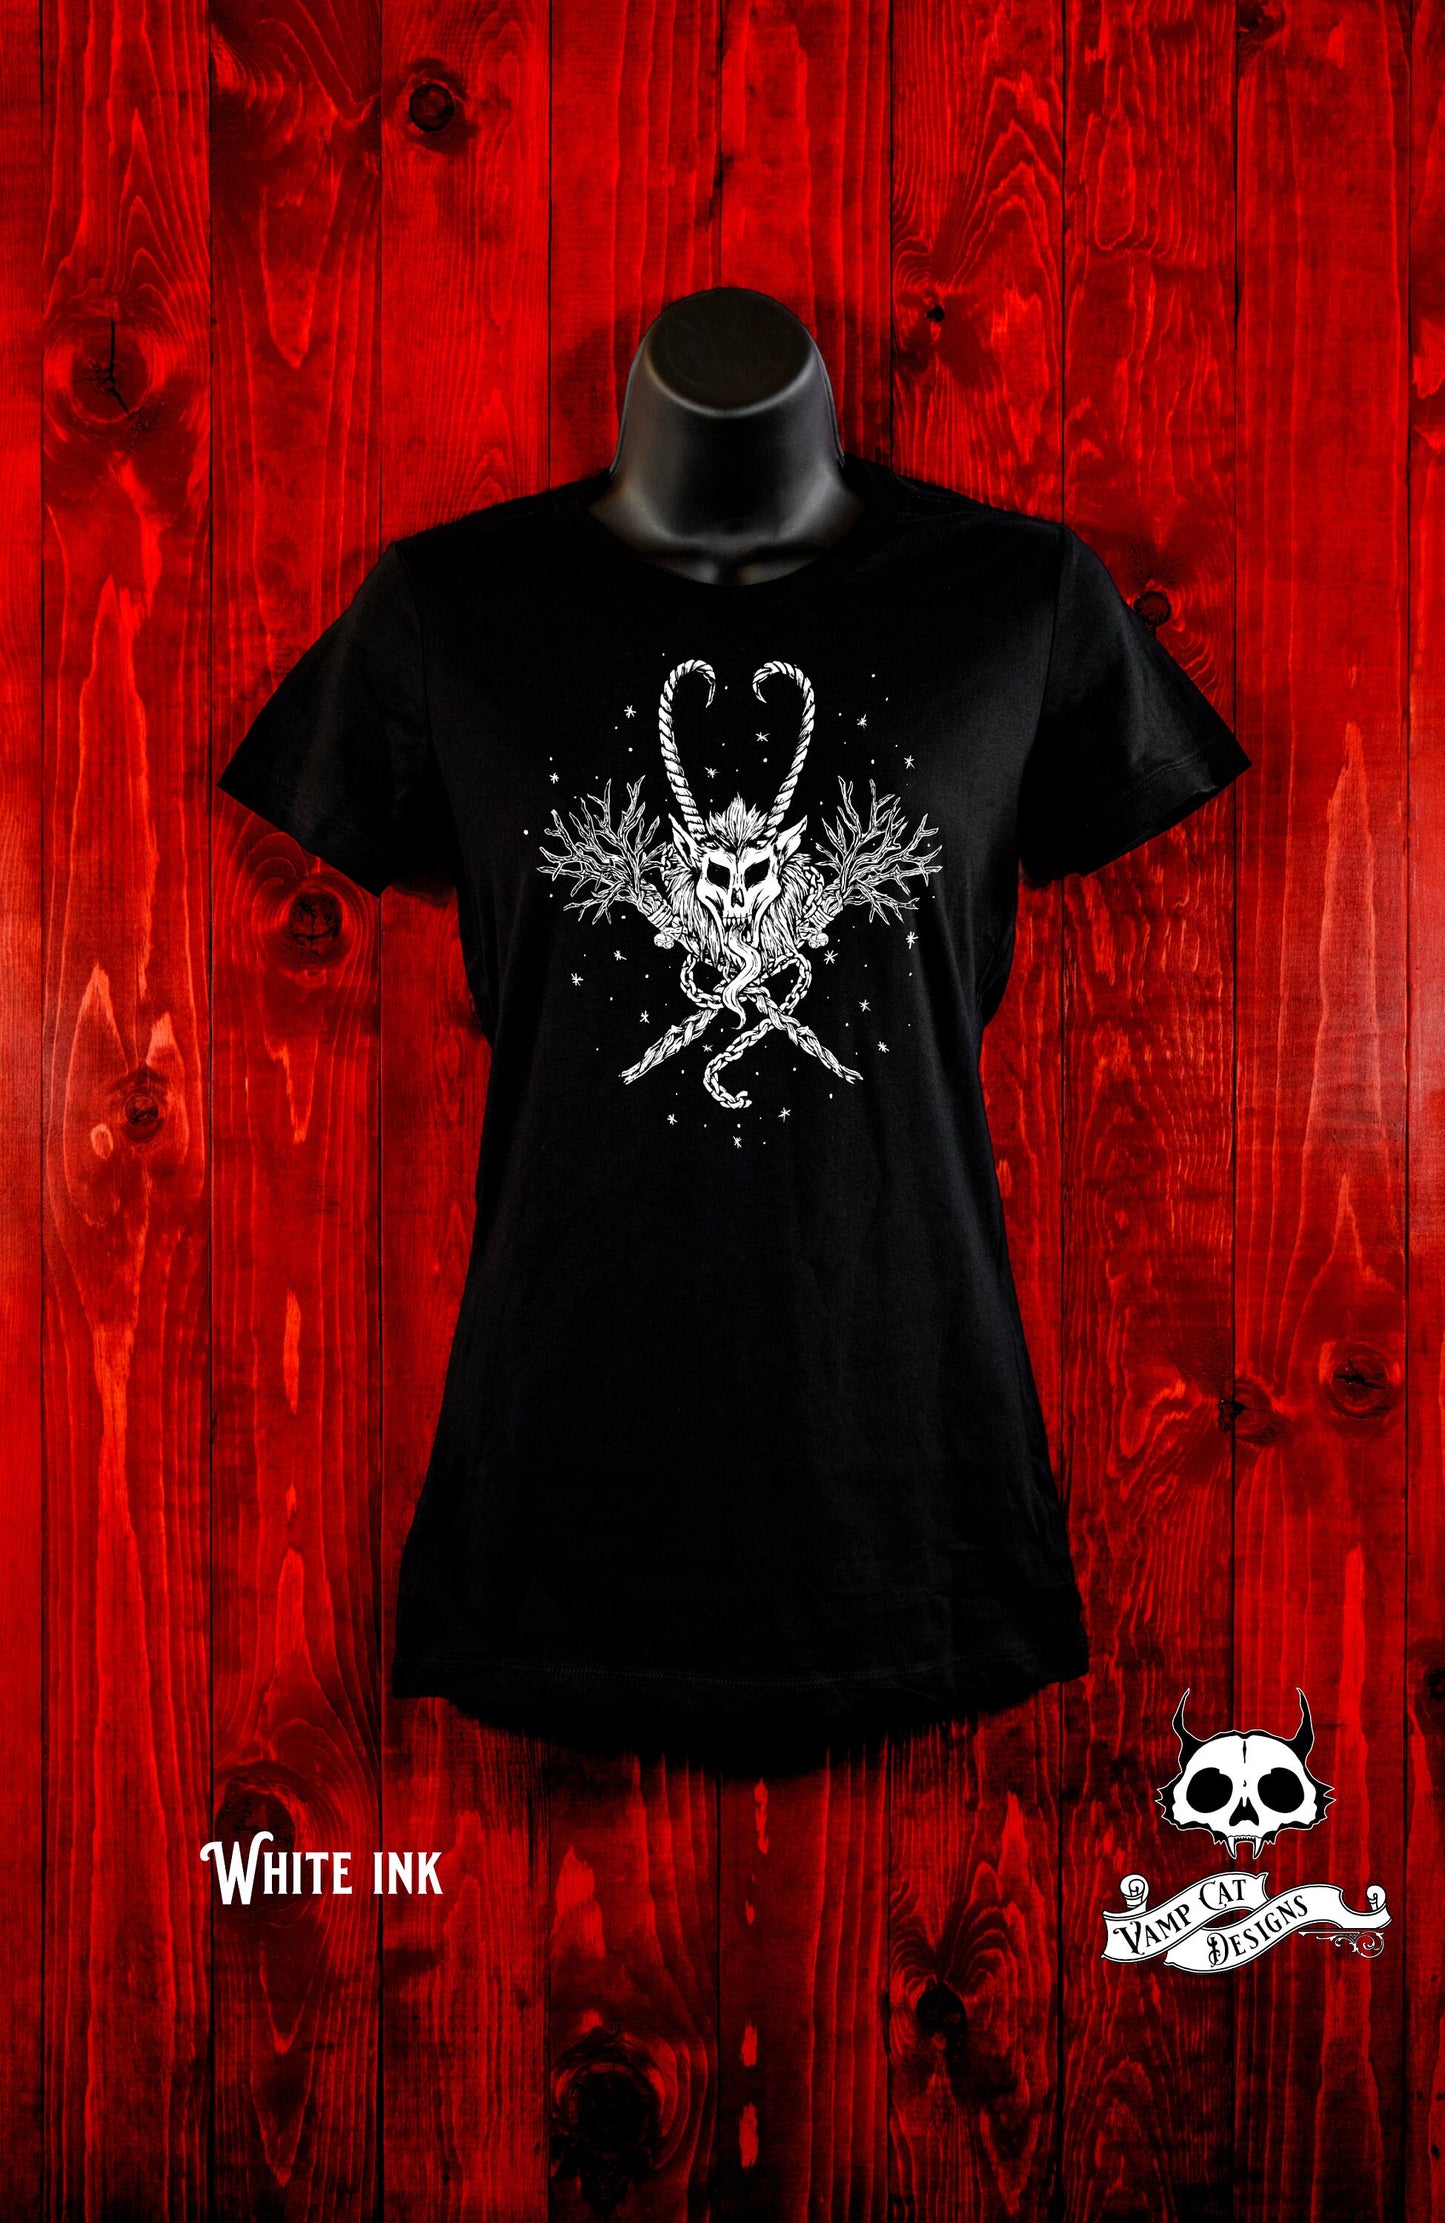 Krampus Women's T-Shirt-Krampus Skull Emblem-Creepmas-Dark Holiday Art-Devil-Horror Krampus-Christmas-Graphic Tee-Original Illustration